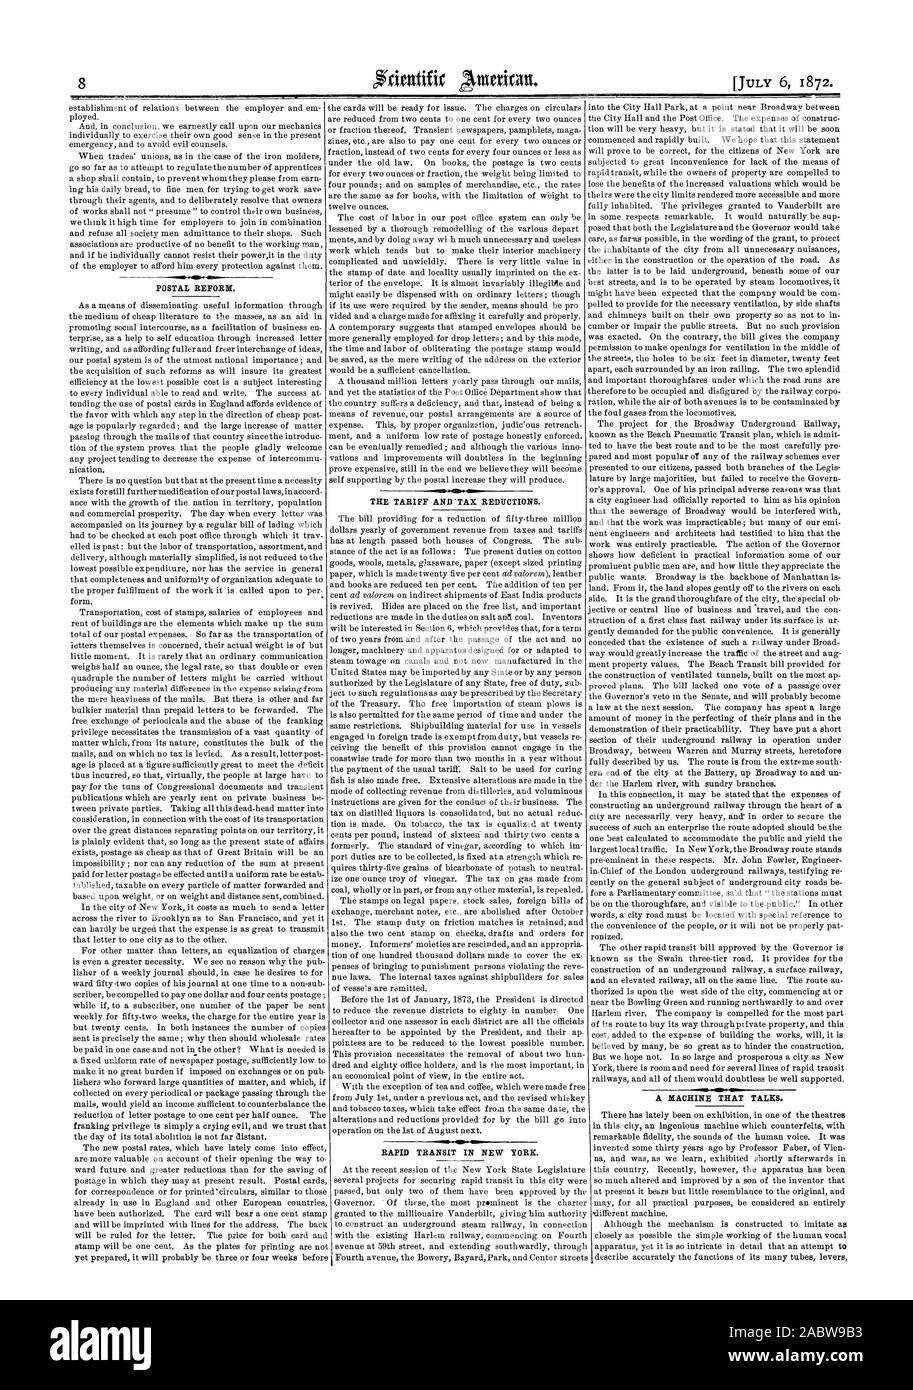 La tariffa e ' riduzioni fiscali. RAPID TRANSIT IN NEW YORK. La riforma postale. Una macchina che parla., Scientific American, 1872-07-06 Foto Stock